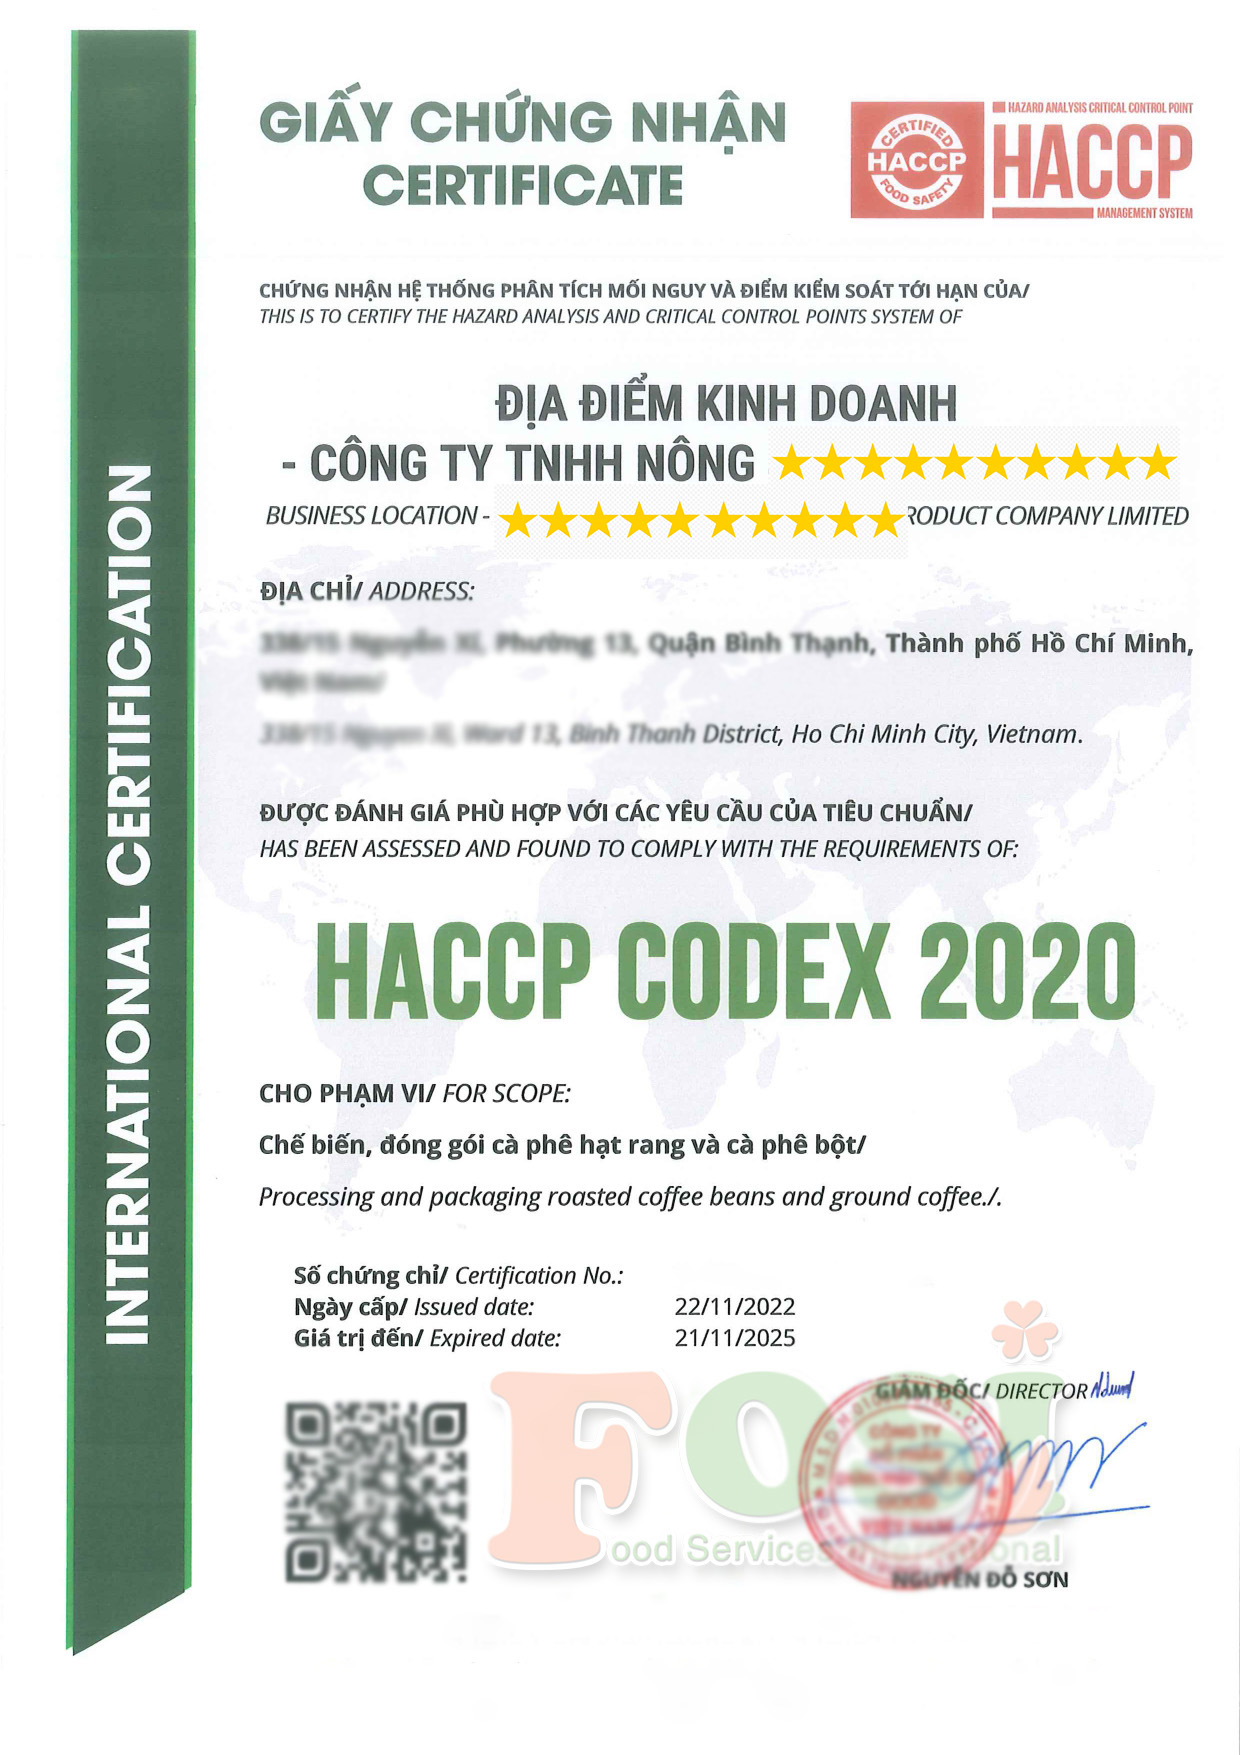 mẫu giấy chứng nhận HACCP cho doanh nghiệp